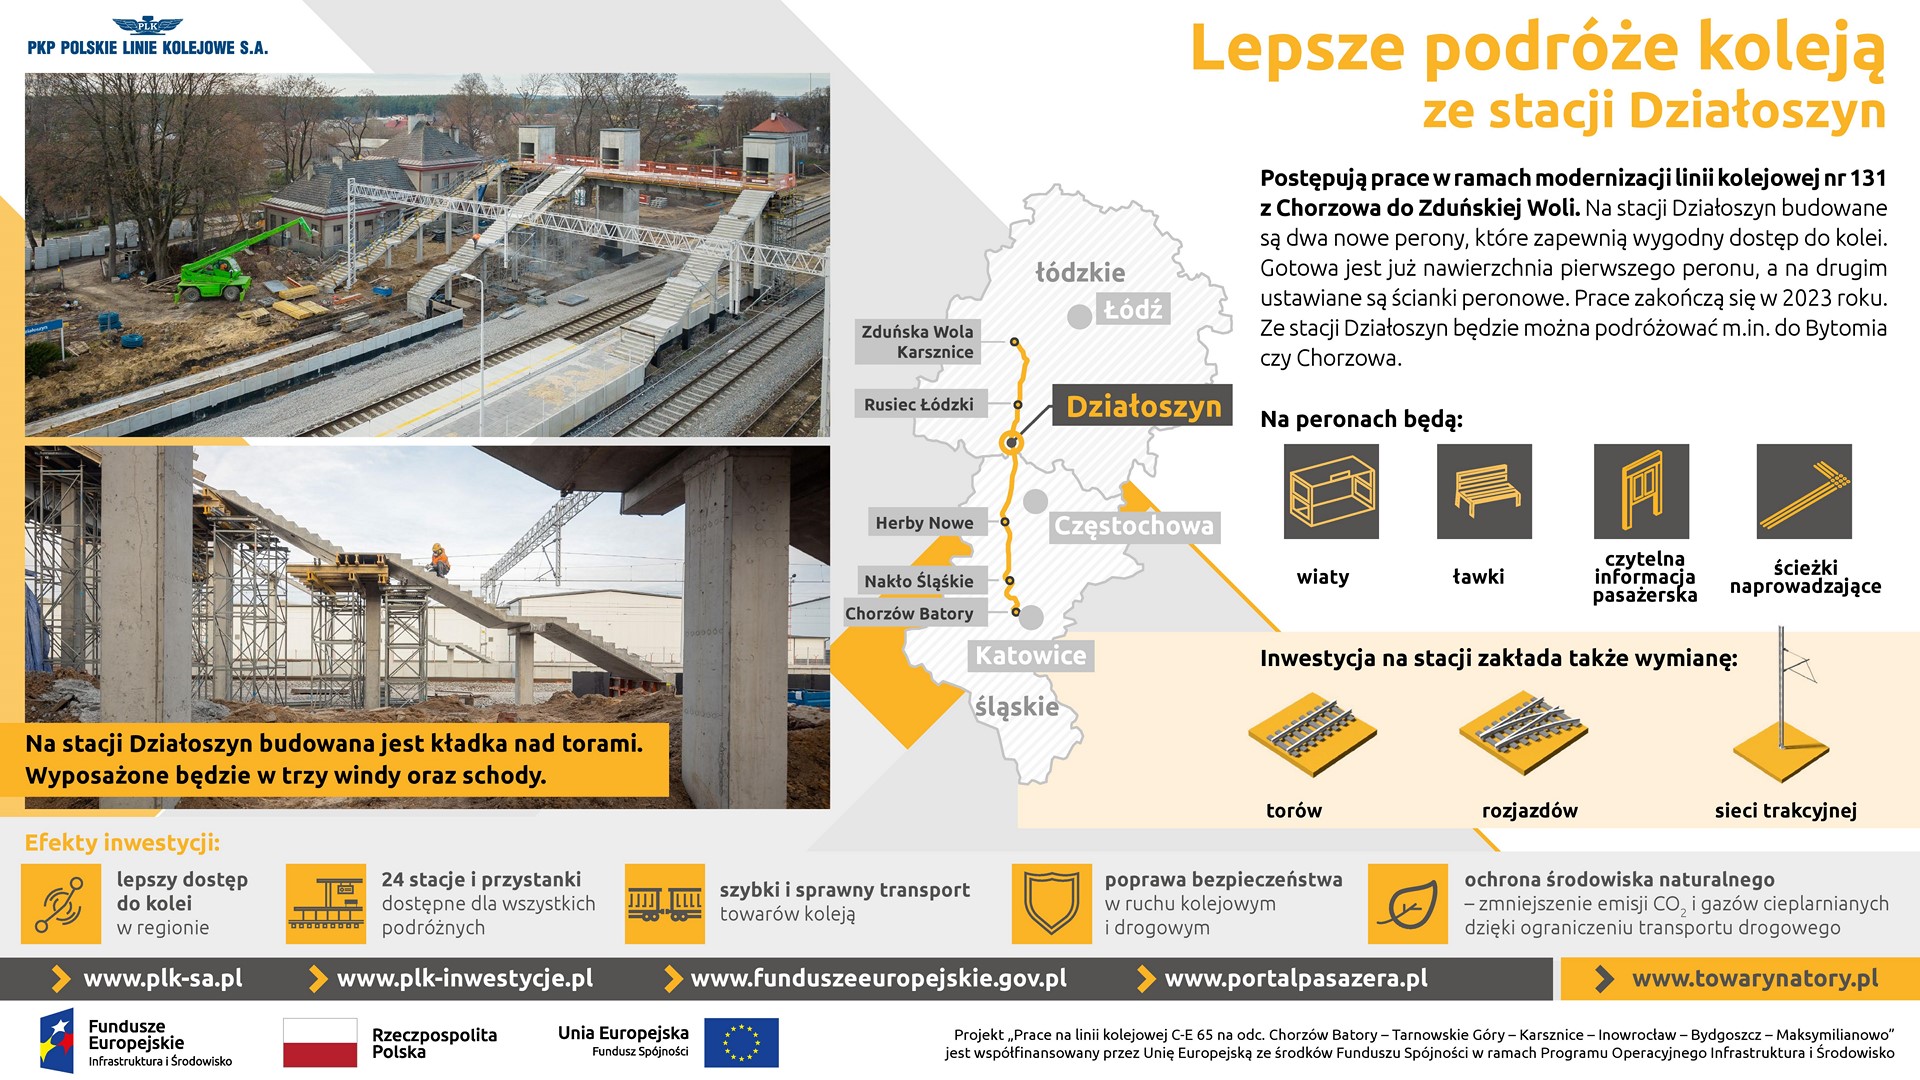 Infografika przedstawia zdjęcia ze stacji Działoszyn